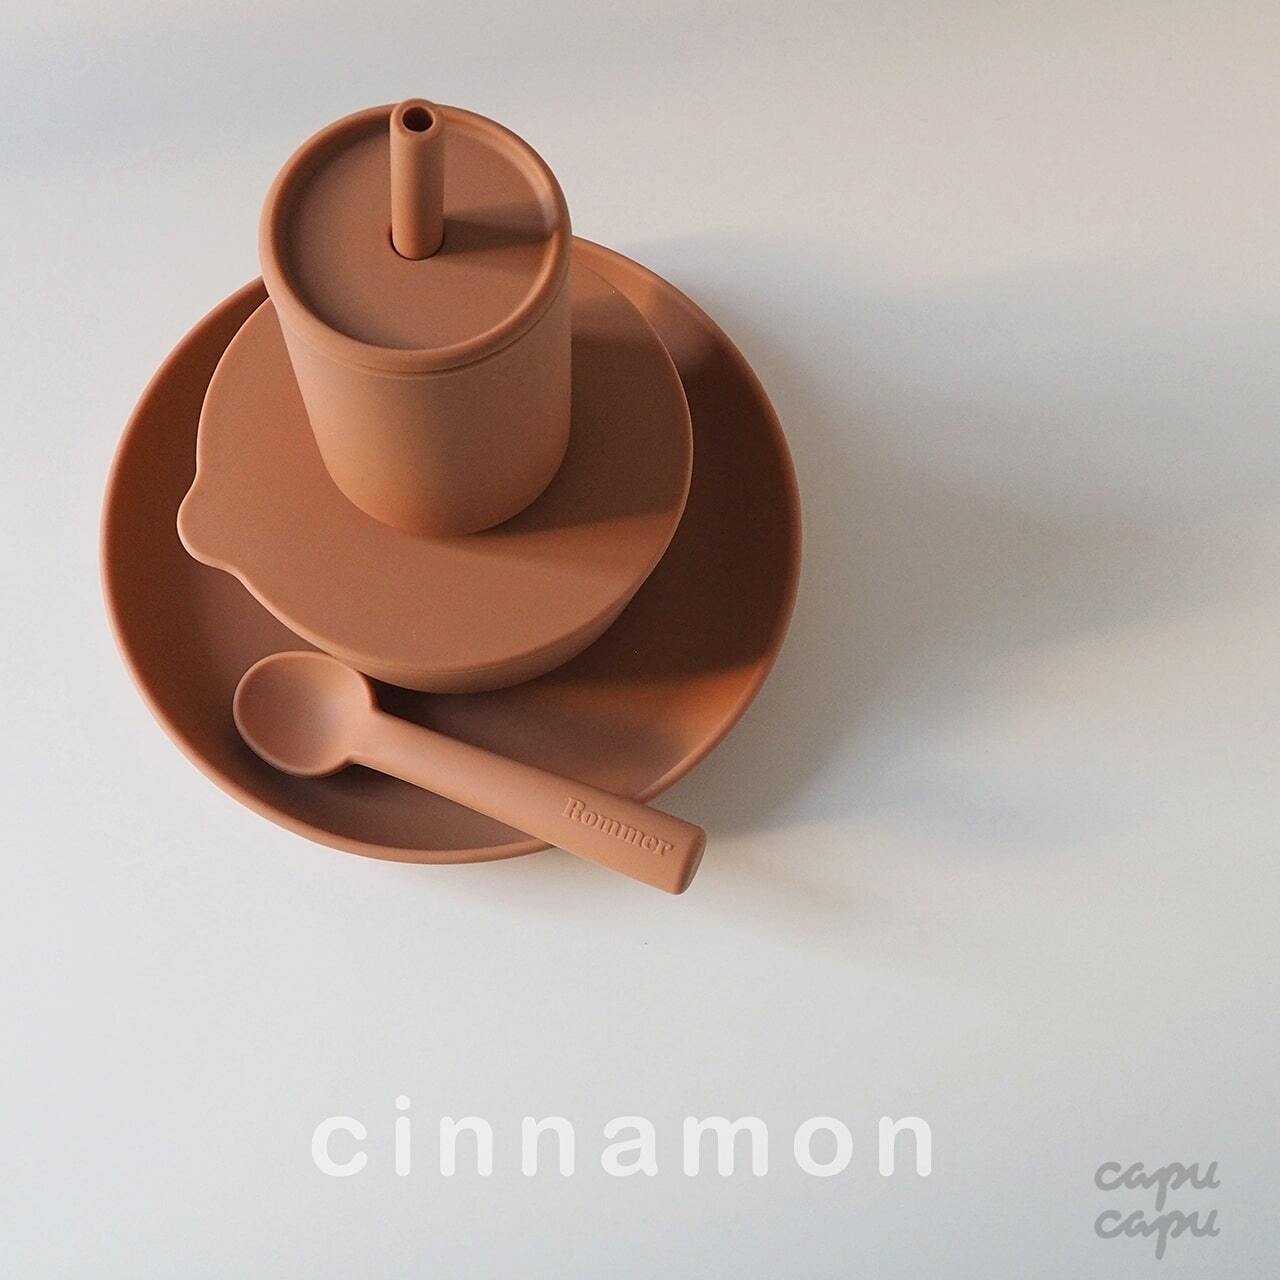 «送料無料» Rommer dinnerware cinnamon ベビー食器4点セット シナモン